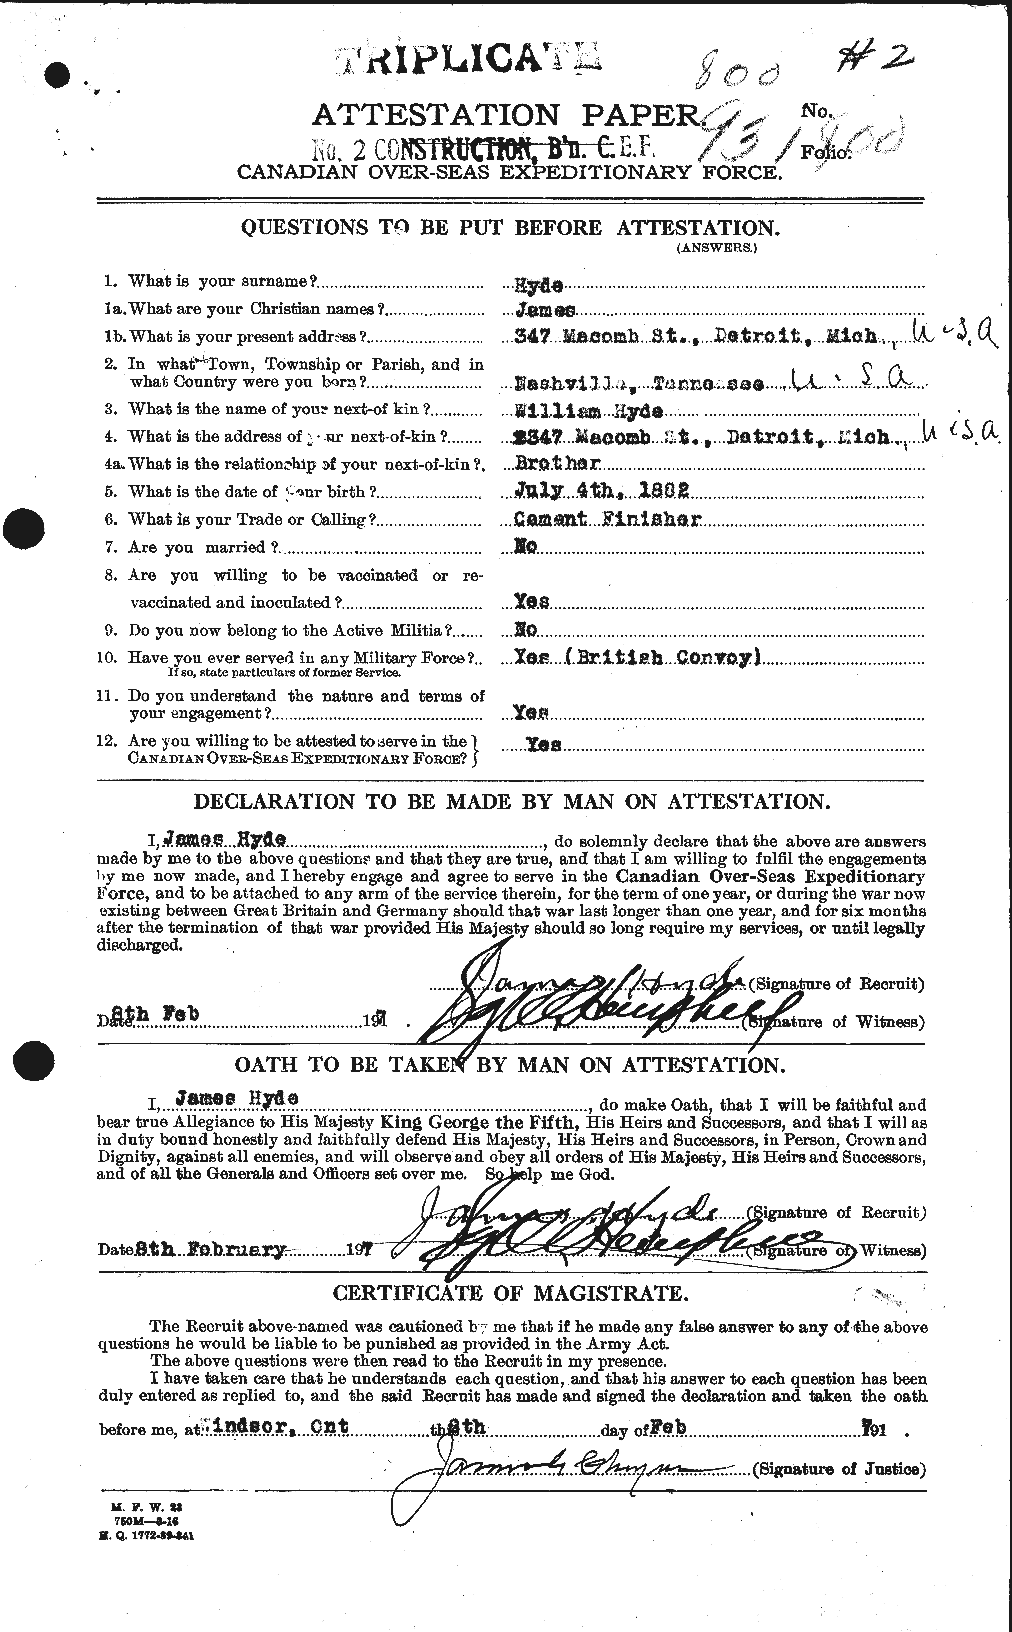 Dossiers du Personnel de la Première Guerre mondiale - CEC 408701a